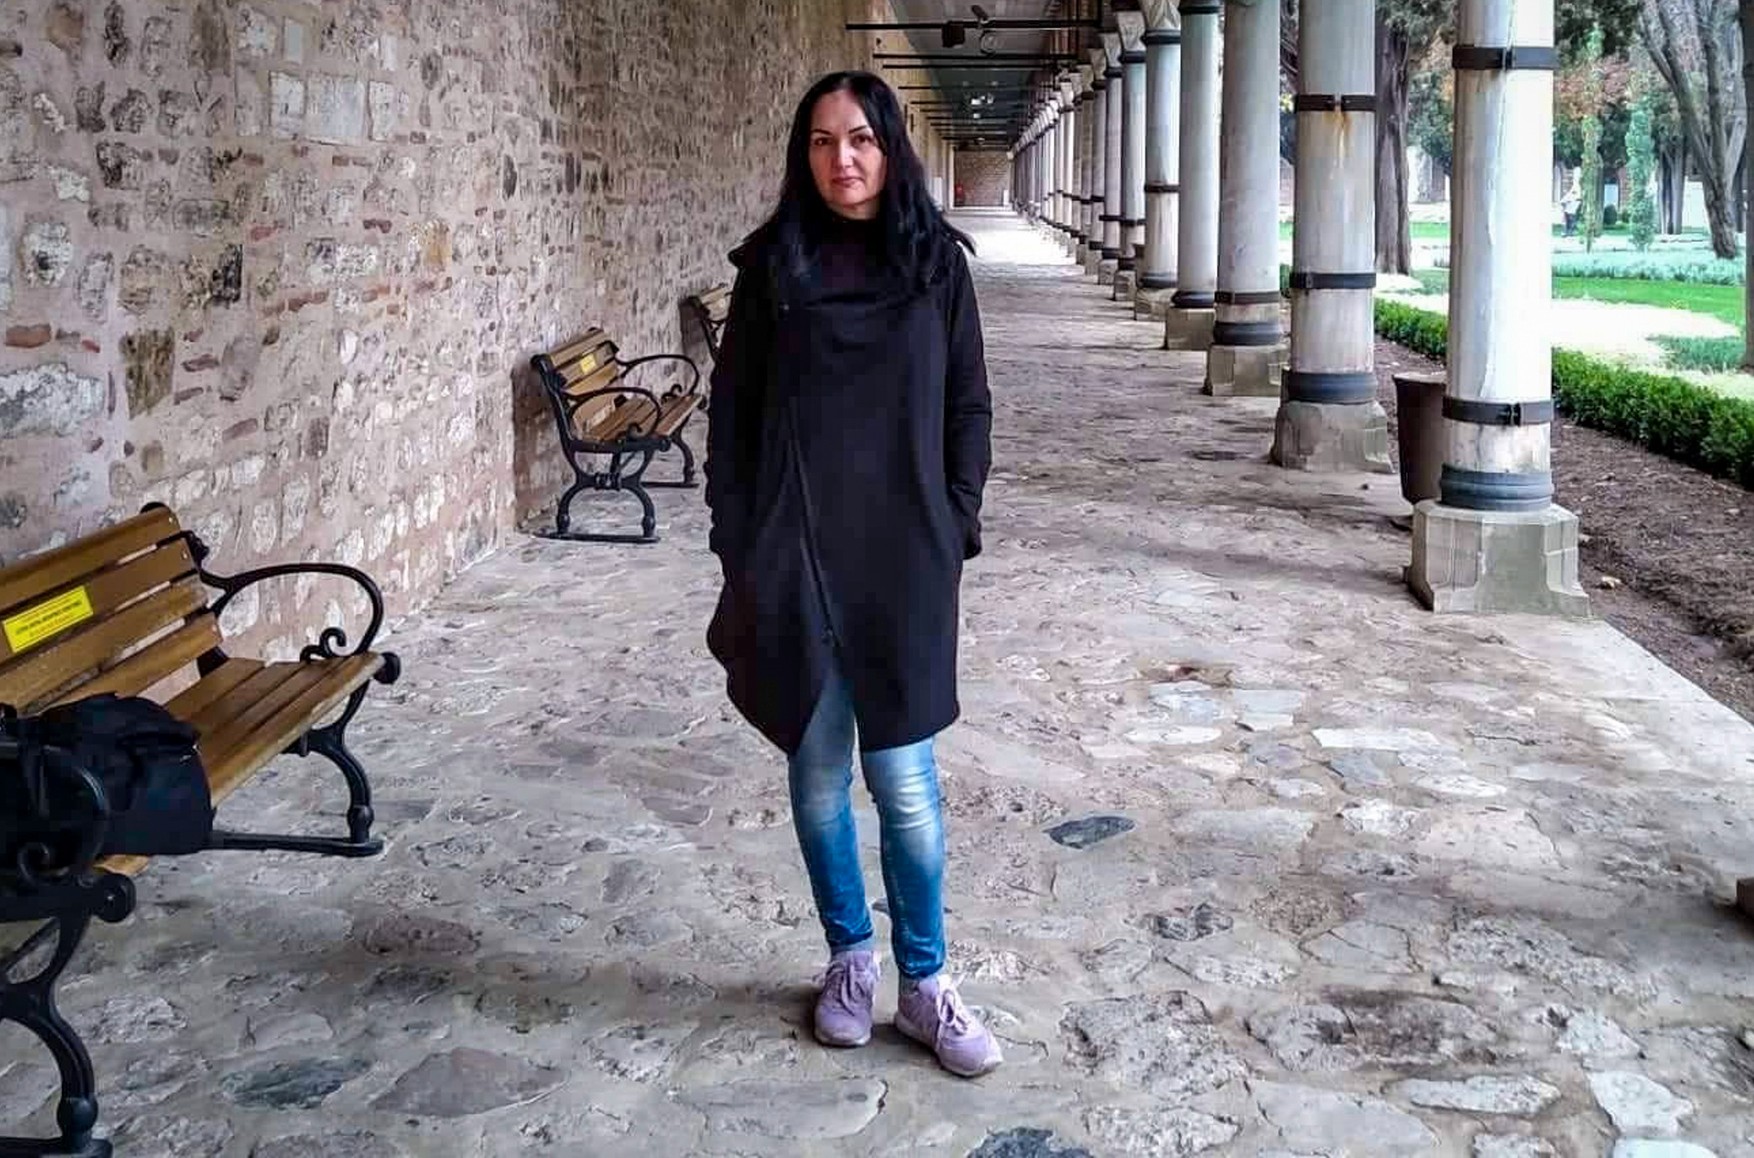 Осужденная в Крыму украинская журналистка Ирина Данилович объявила сухую голодовку с требованием предоставить ей медицинскую помощь